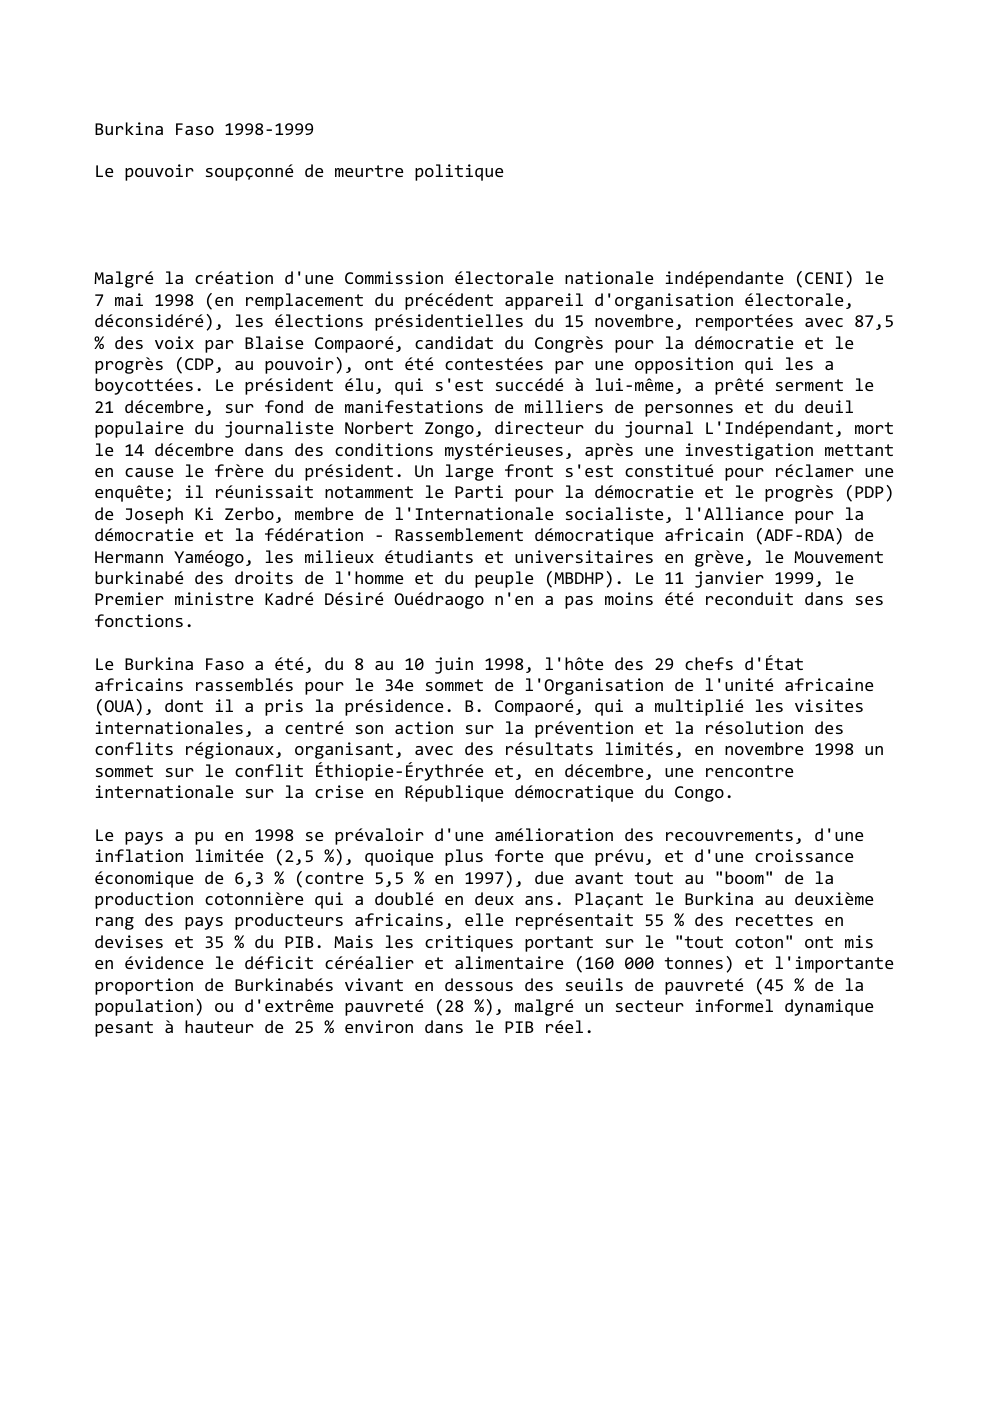 Prévisualisation du document Burkina Faso 1998-1999
Le pouvoir soupçonné de meurtre politique

Malgré la création d'une Commission électorale nationale indépendante (CENI) le
7...